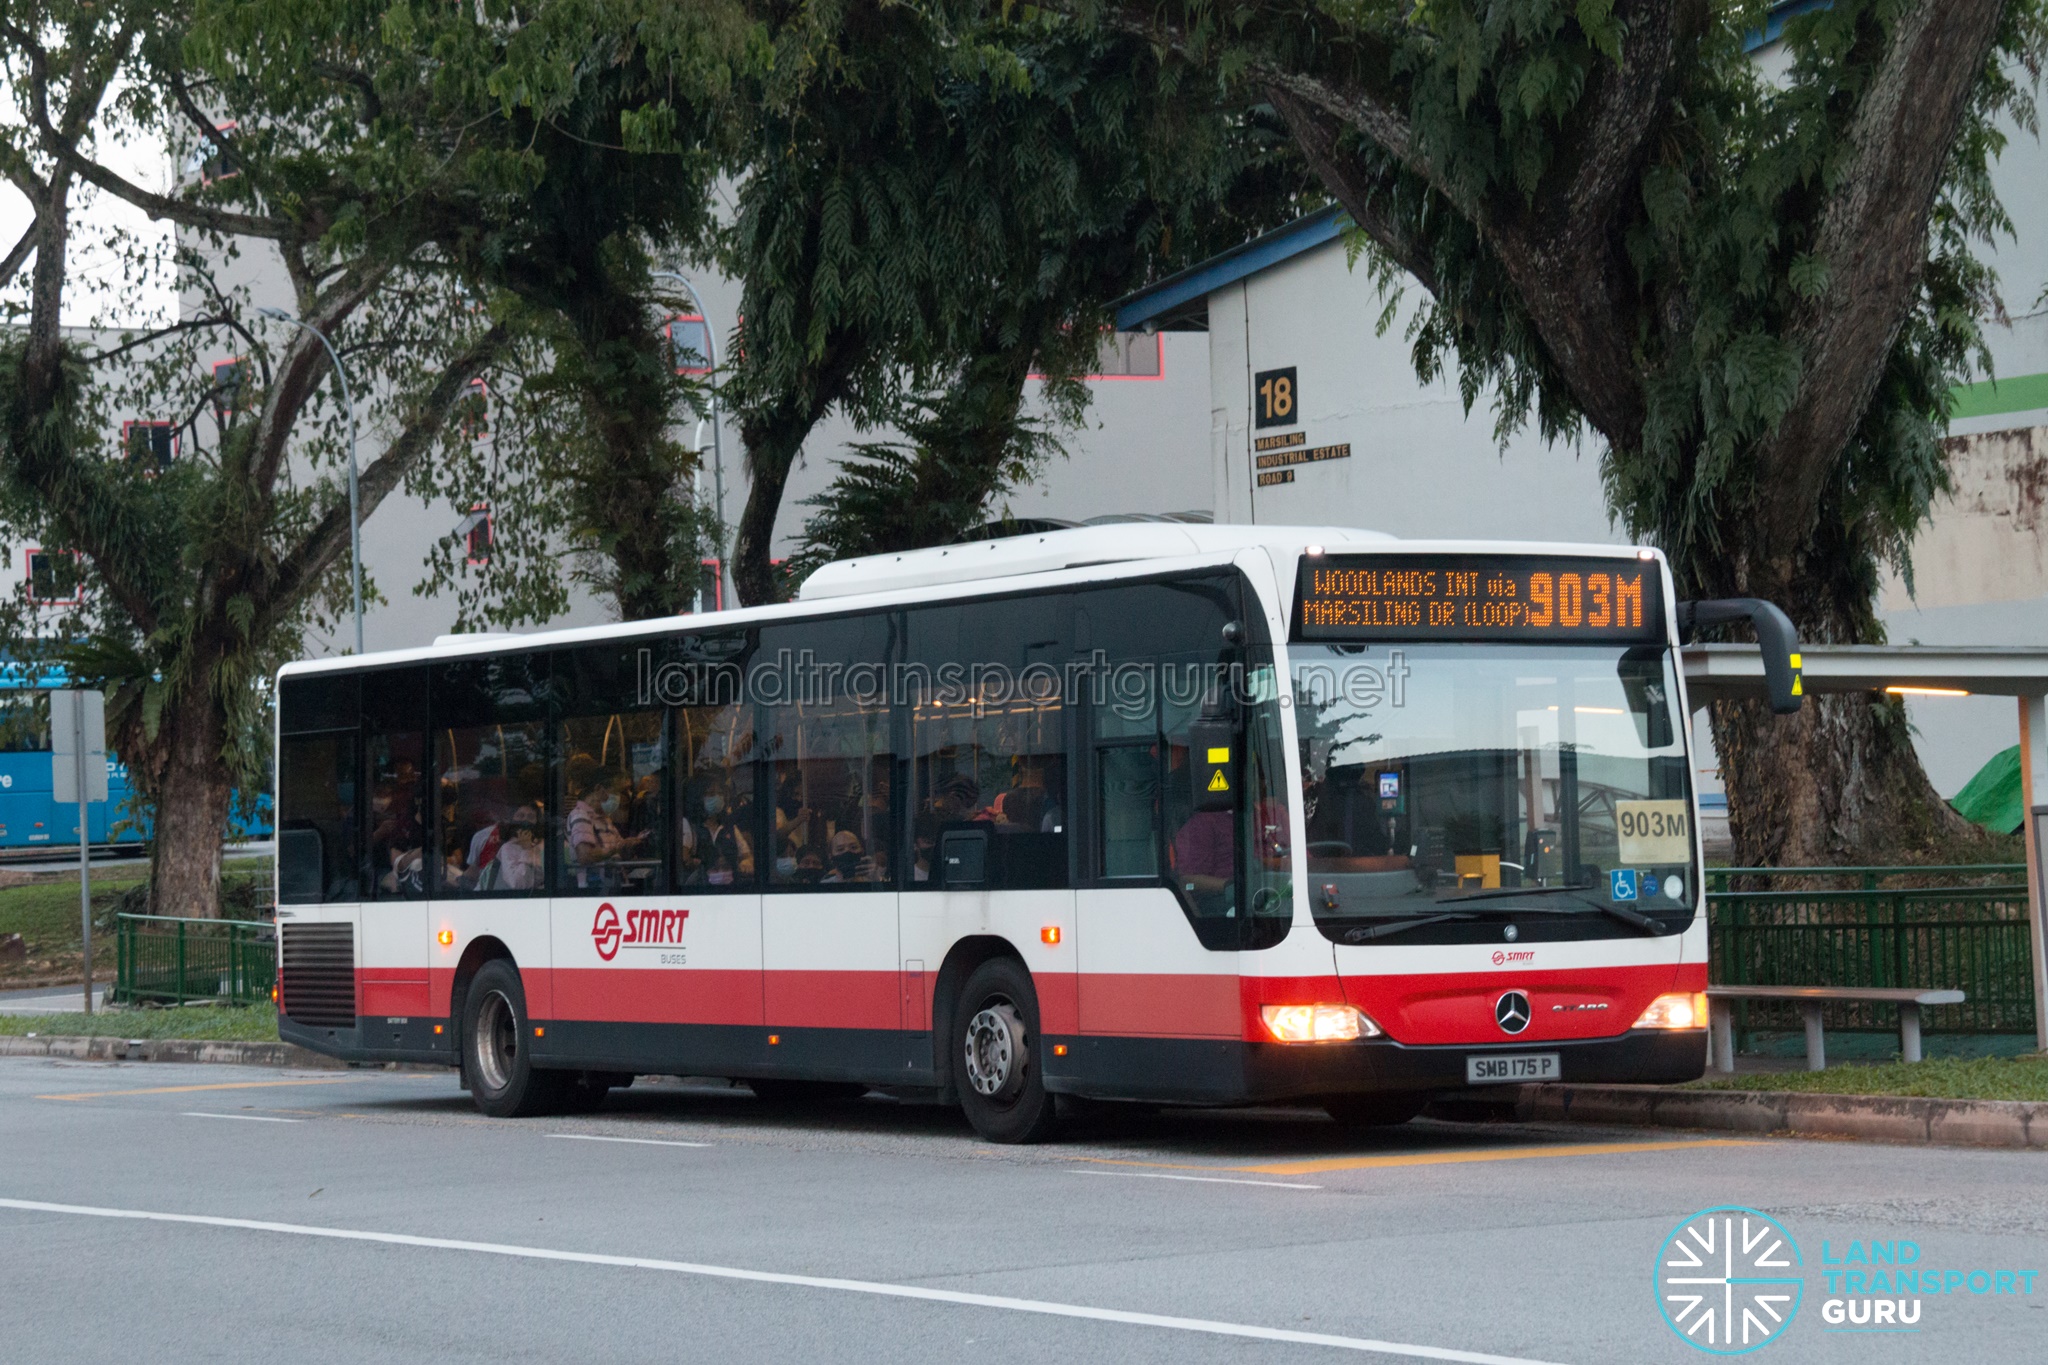 SMRT Feeder Bus Service 903M